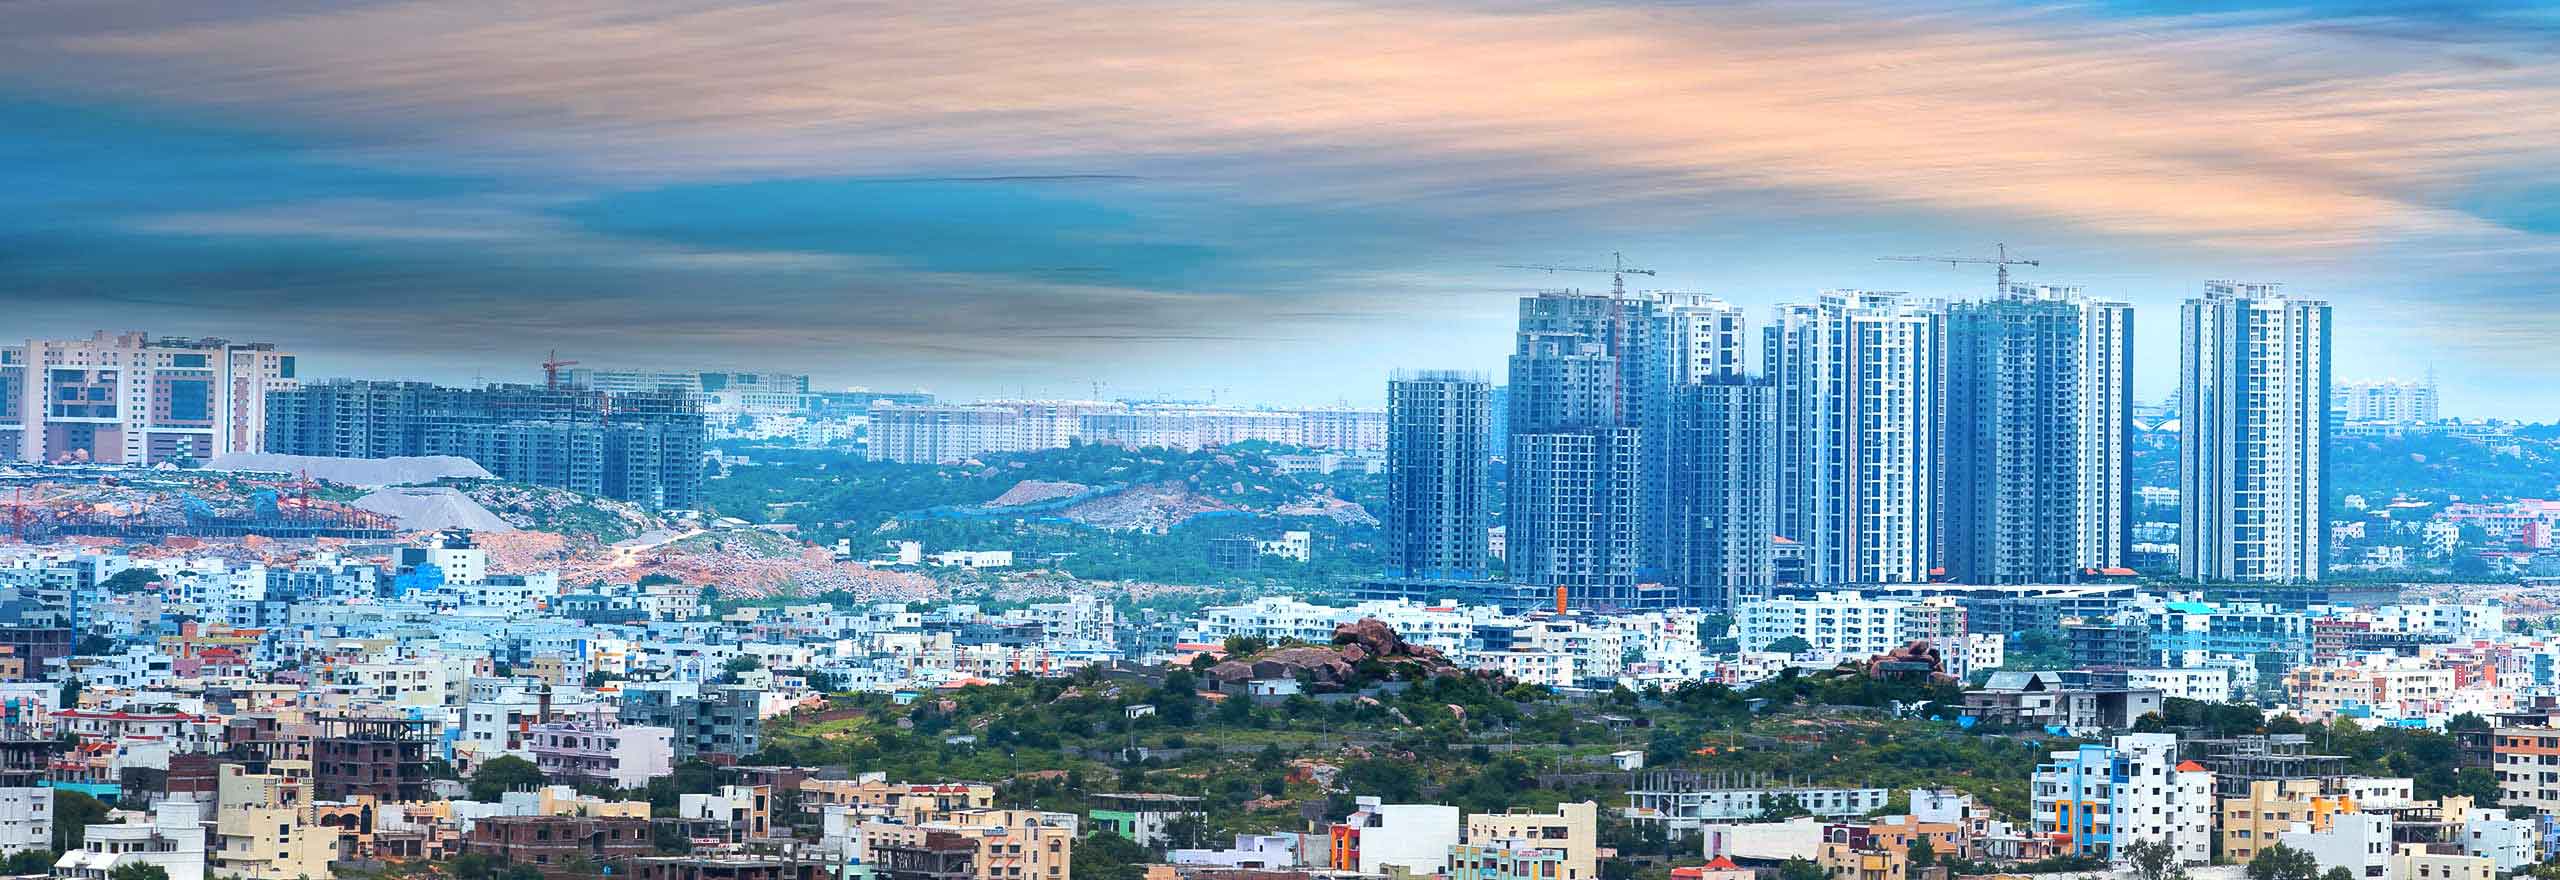 Le Capability Center India d’Hexagon face à un paysage urbain, montrant la taille et l’opportunité qu’il offre.